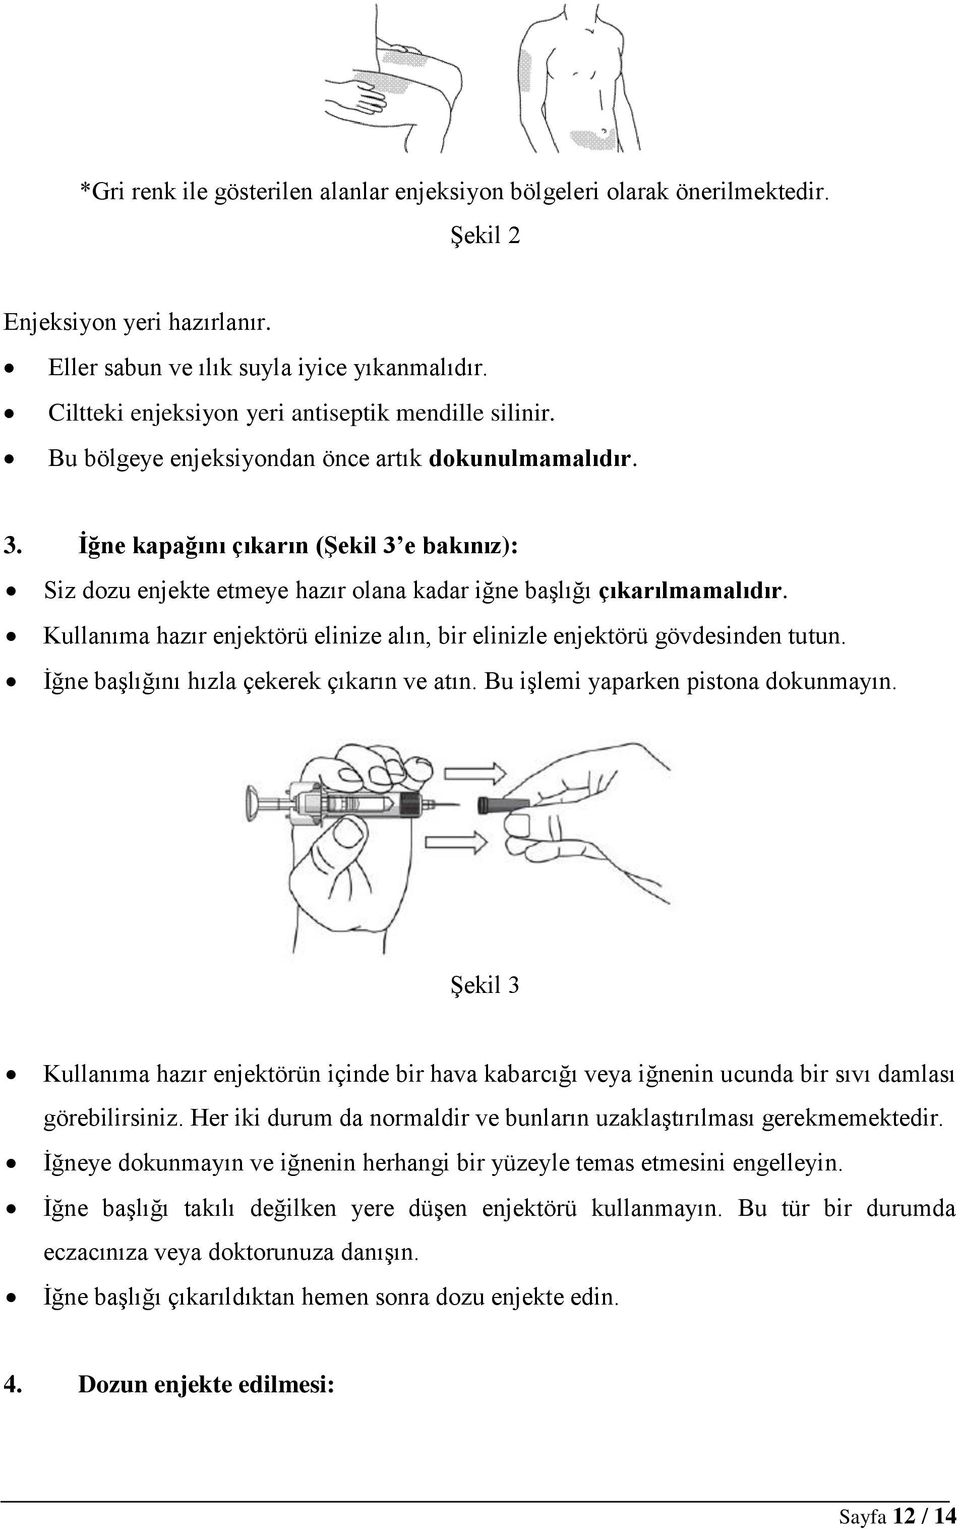 İğne kapağını çıkarın (Şekil 3 e bakınız): Siz dozu enjekte etmeye hazır olana kadar iğne başlığı çıkarılmamalıdır. Kullanıma hazır enjektörü elinize alın, bir elinizle enjektörü gövdesinden tutun.